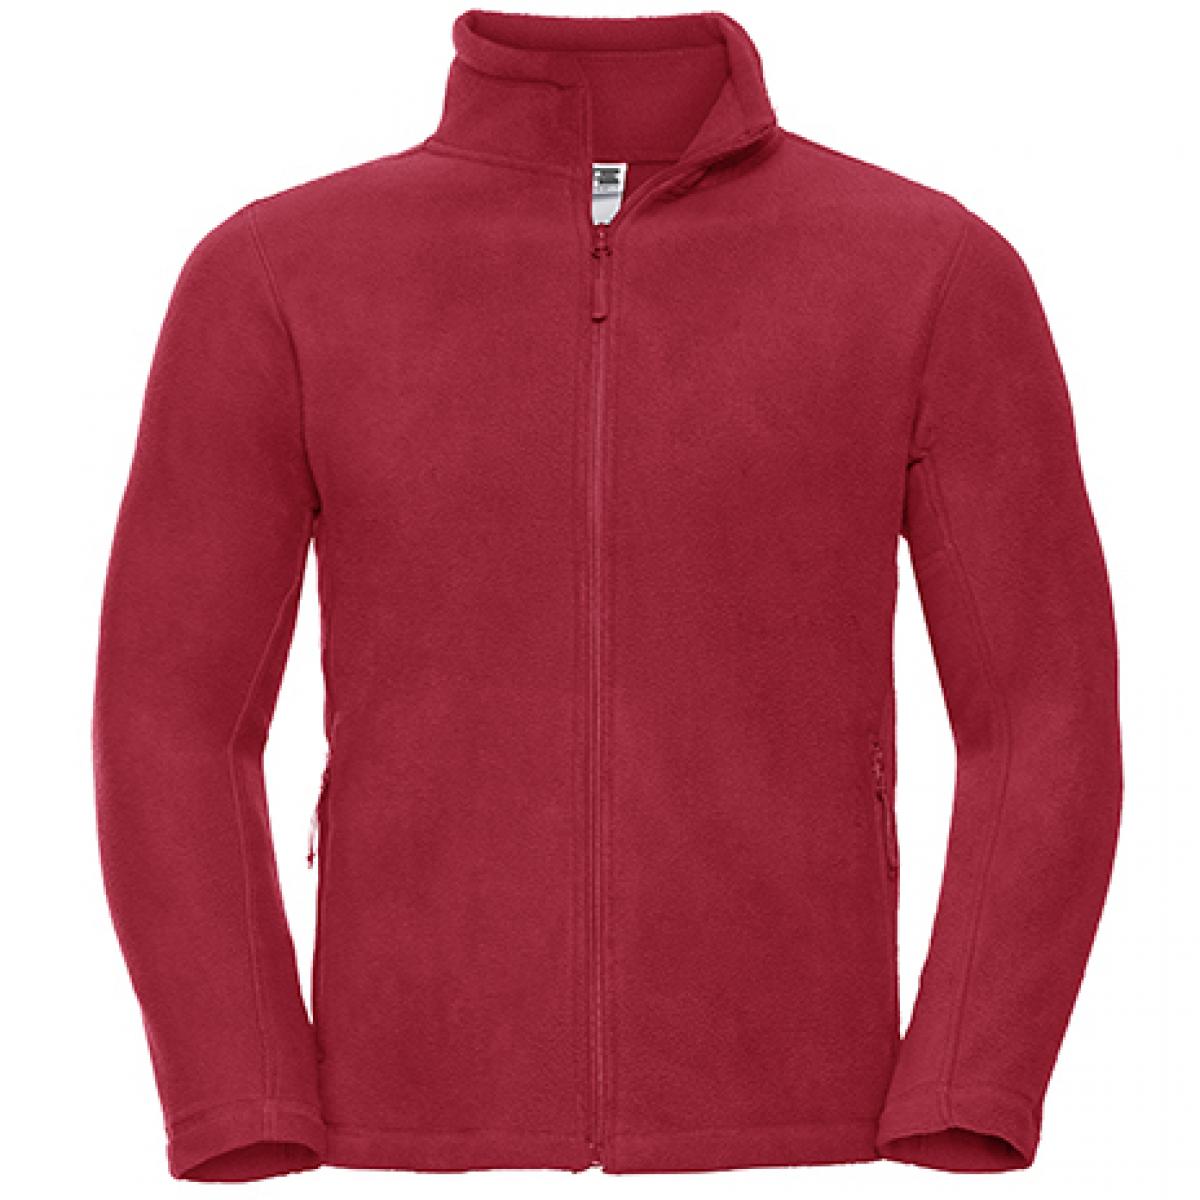 Hersteller: Russell Herstellernummer: R-870M-0 Artikelbezeichnung: Outdoor Fleece Full-Zip Farbe: Classic Red